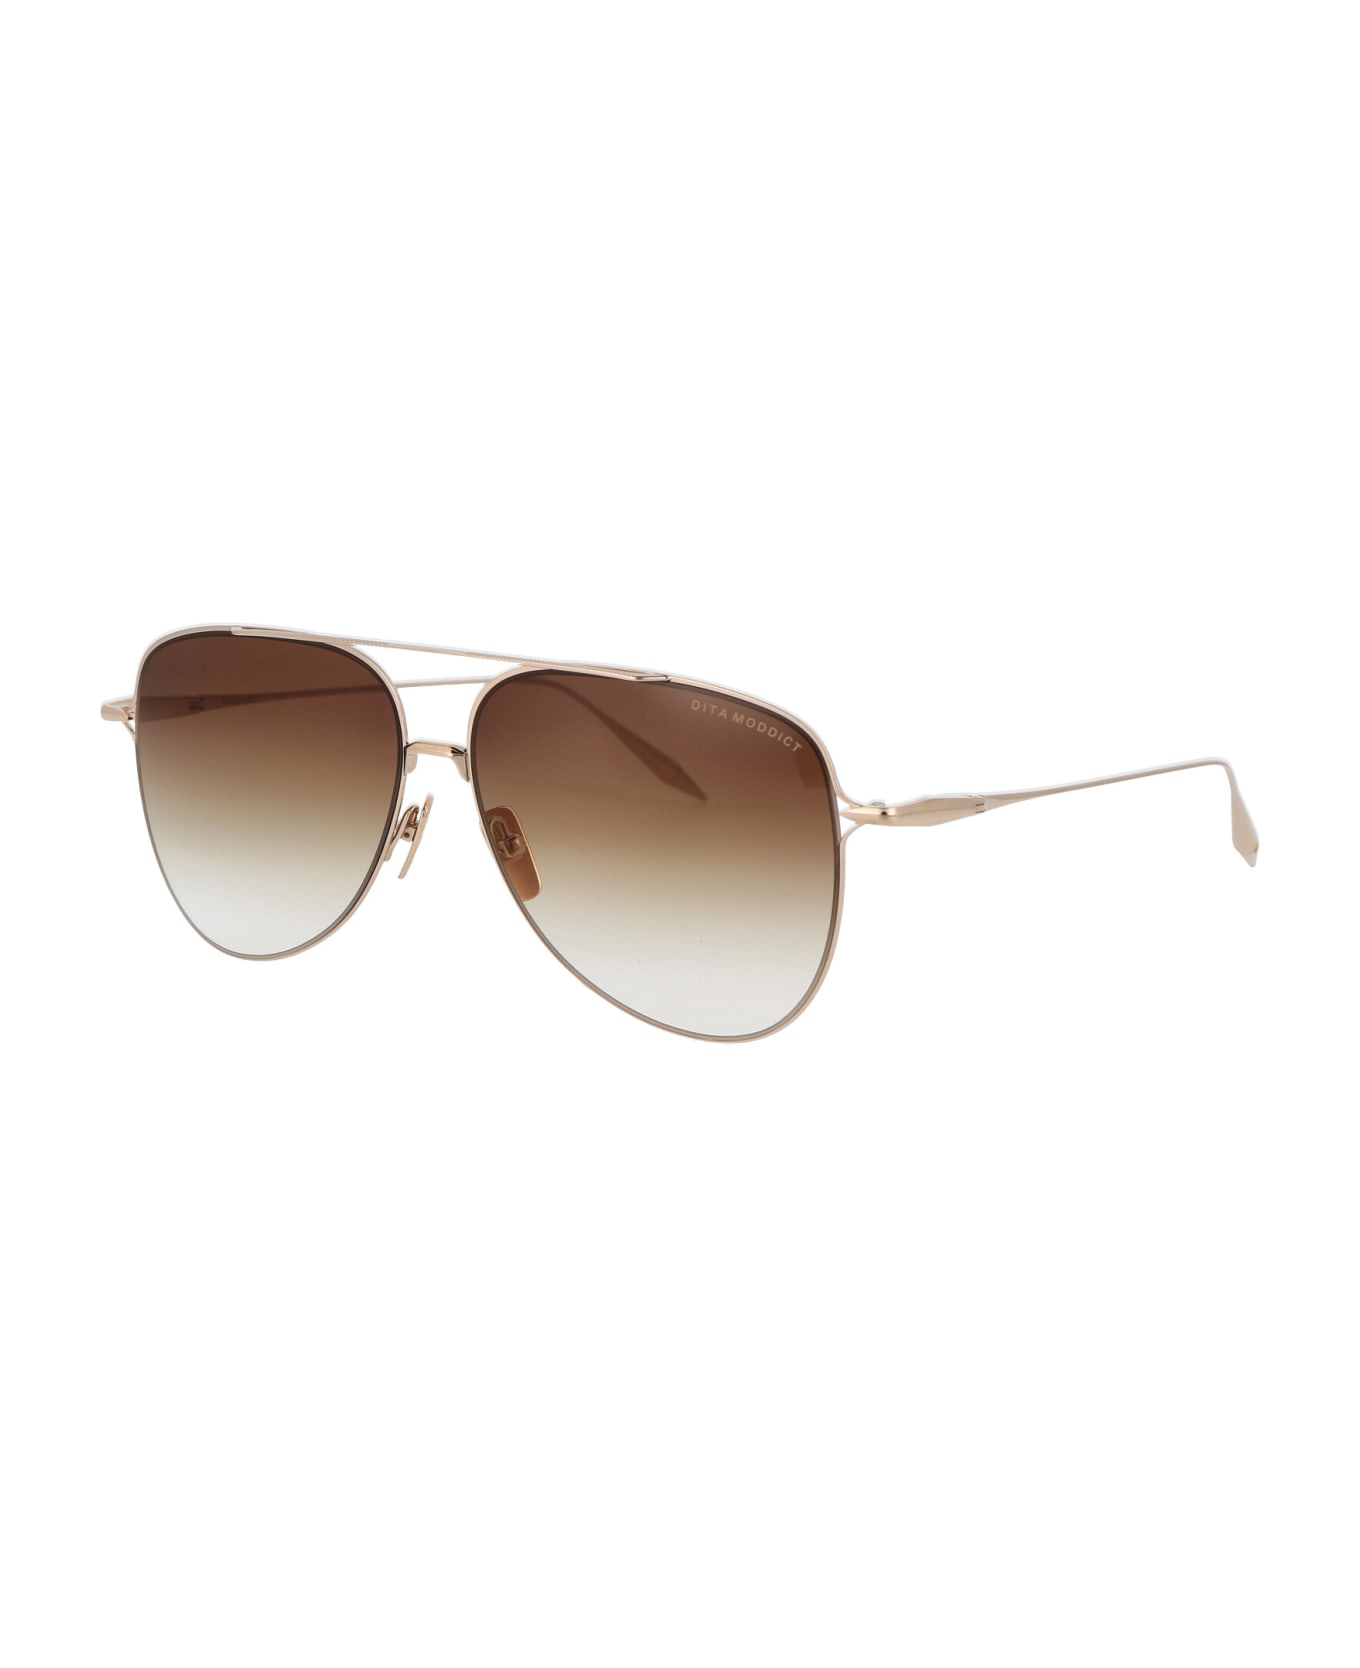 Dita Moddict Sunglasses - White Gold - Gradient サングラス